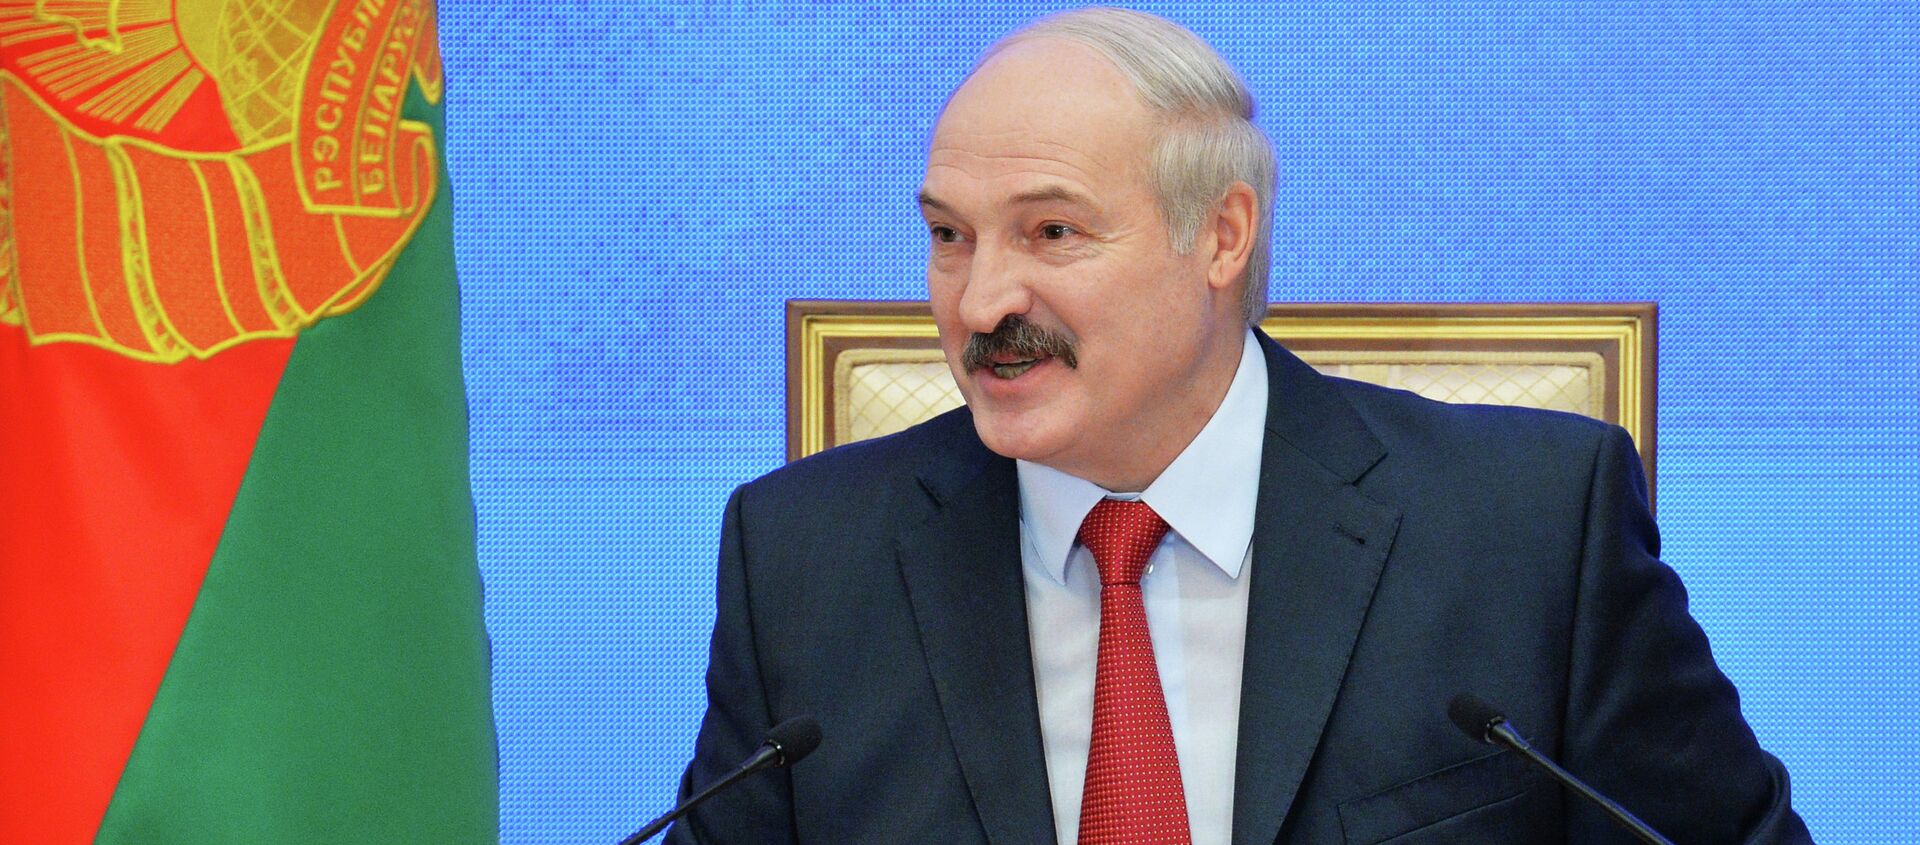 Alexandr Lukashenko, presidente de Bielorrusia - Sputnik Mundo, 1920, 25.06.2015